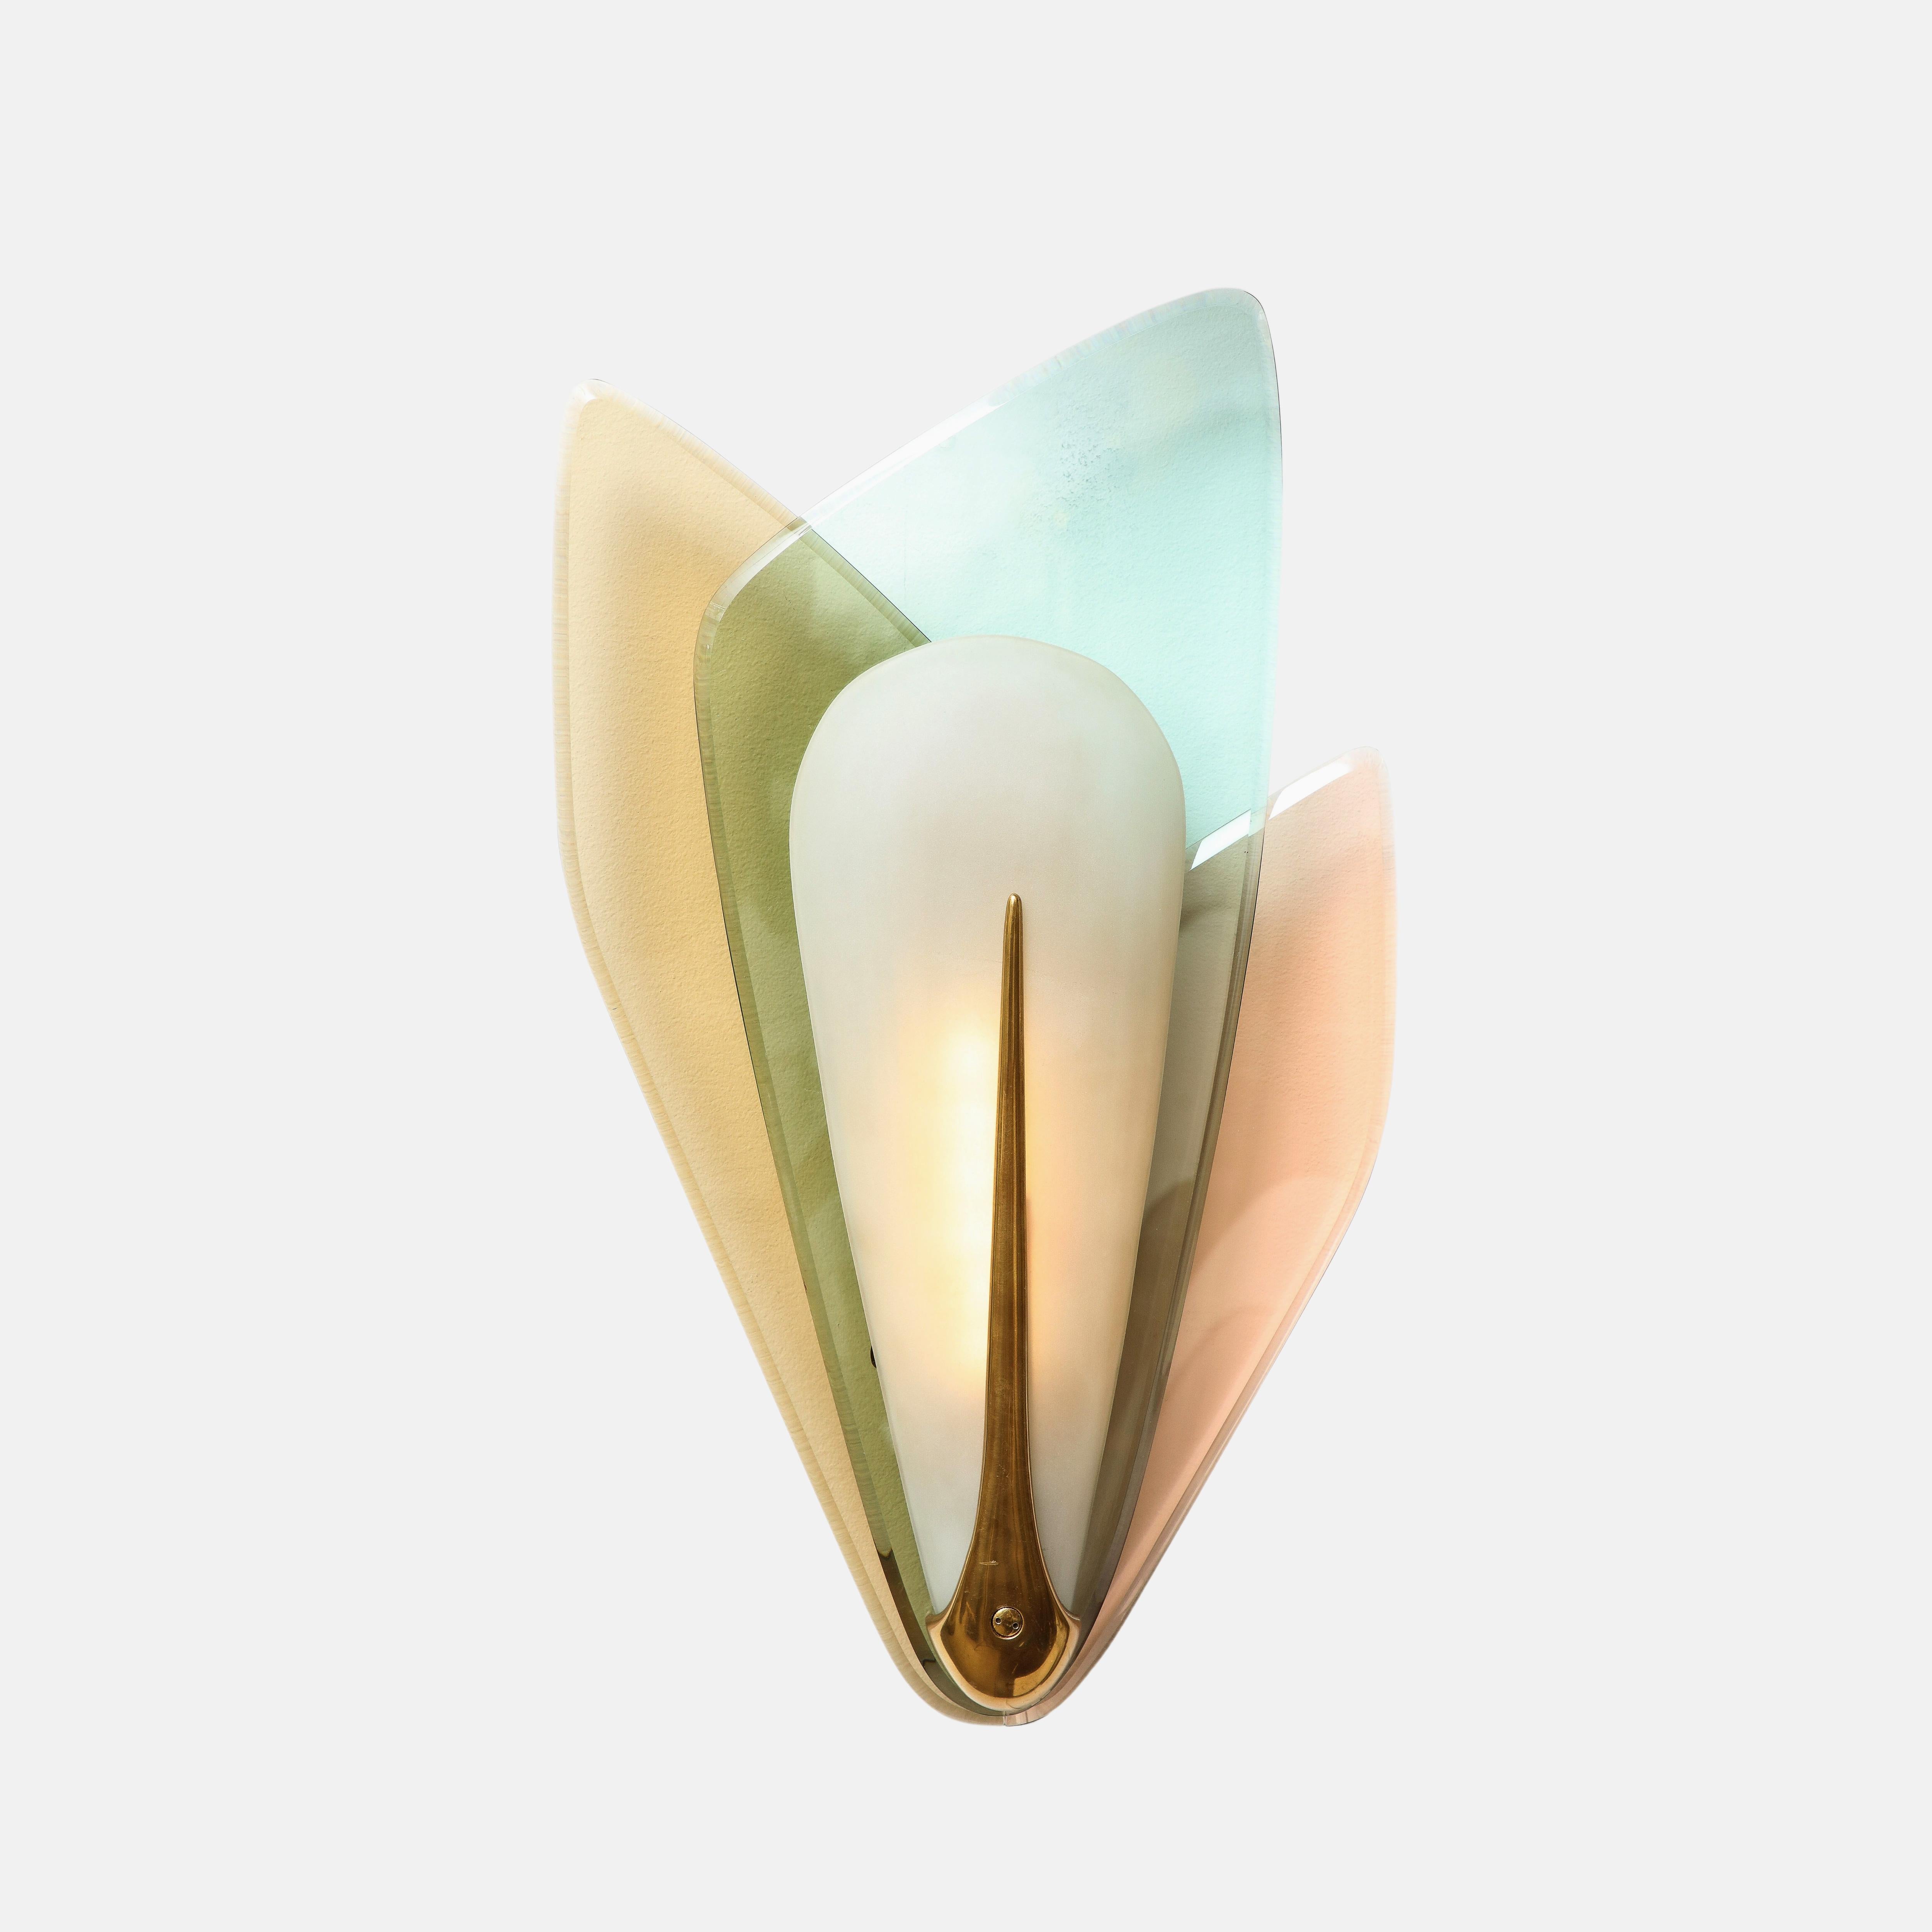 Max Ingrand für Fontana Arte, seltenes und außergewöhnliches Paar großer Leuchter mit drei verschiedenfarbigen, abgeschrägten Kristallglasschichten, die sich von einem zentralen satinierten Glasdiffusor ausbreiten, mit einer eleganten Tränenfassung